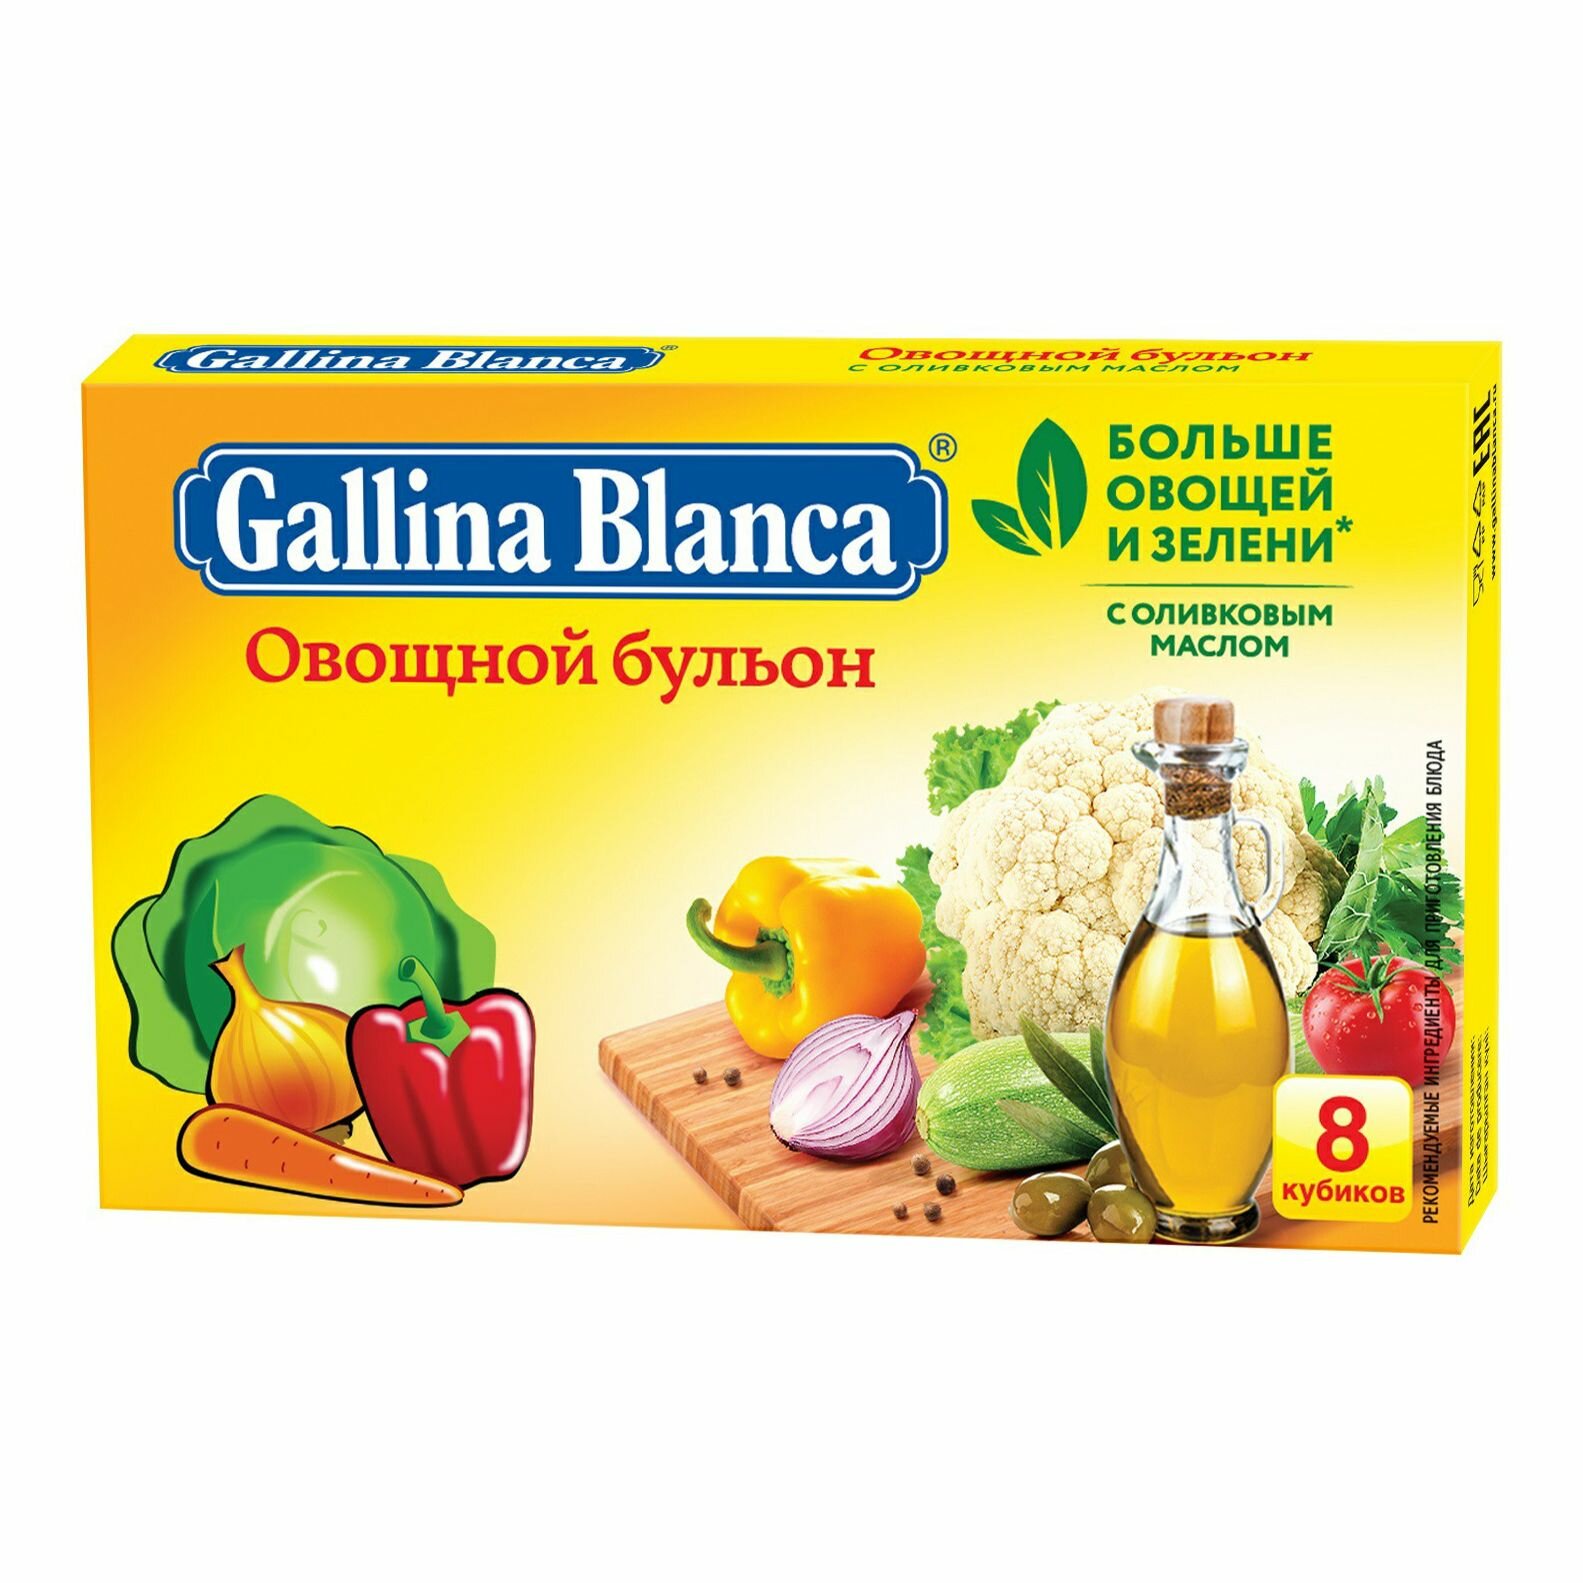 Приправа Gallina Blanca Овощной бульон в кубиках 10 г х 8 шт